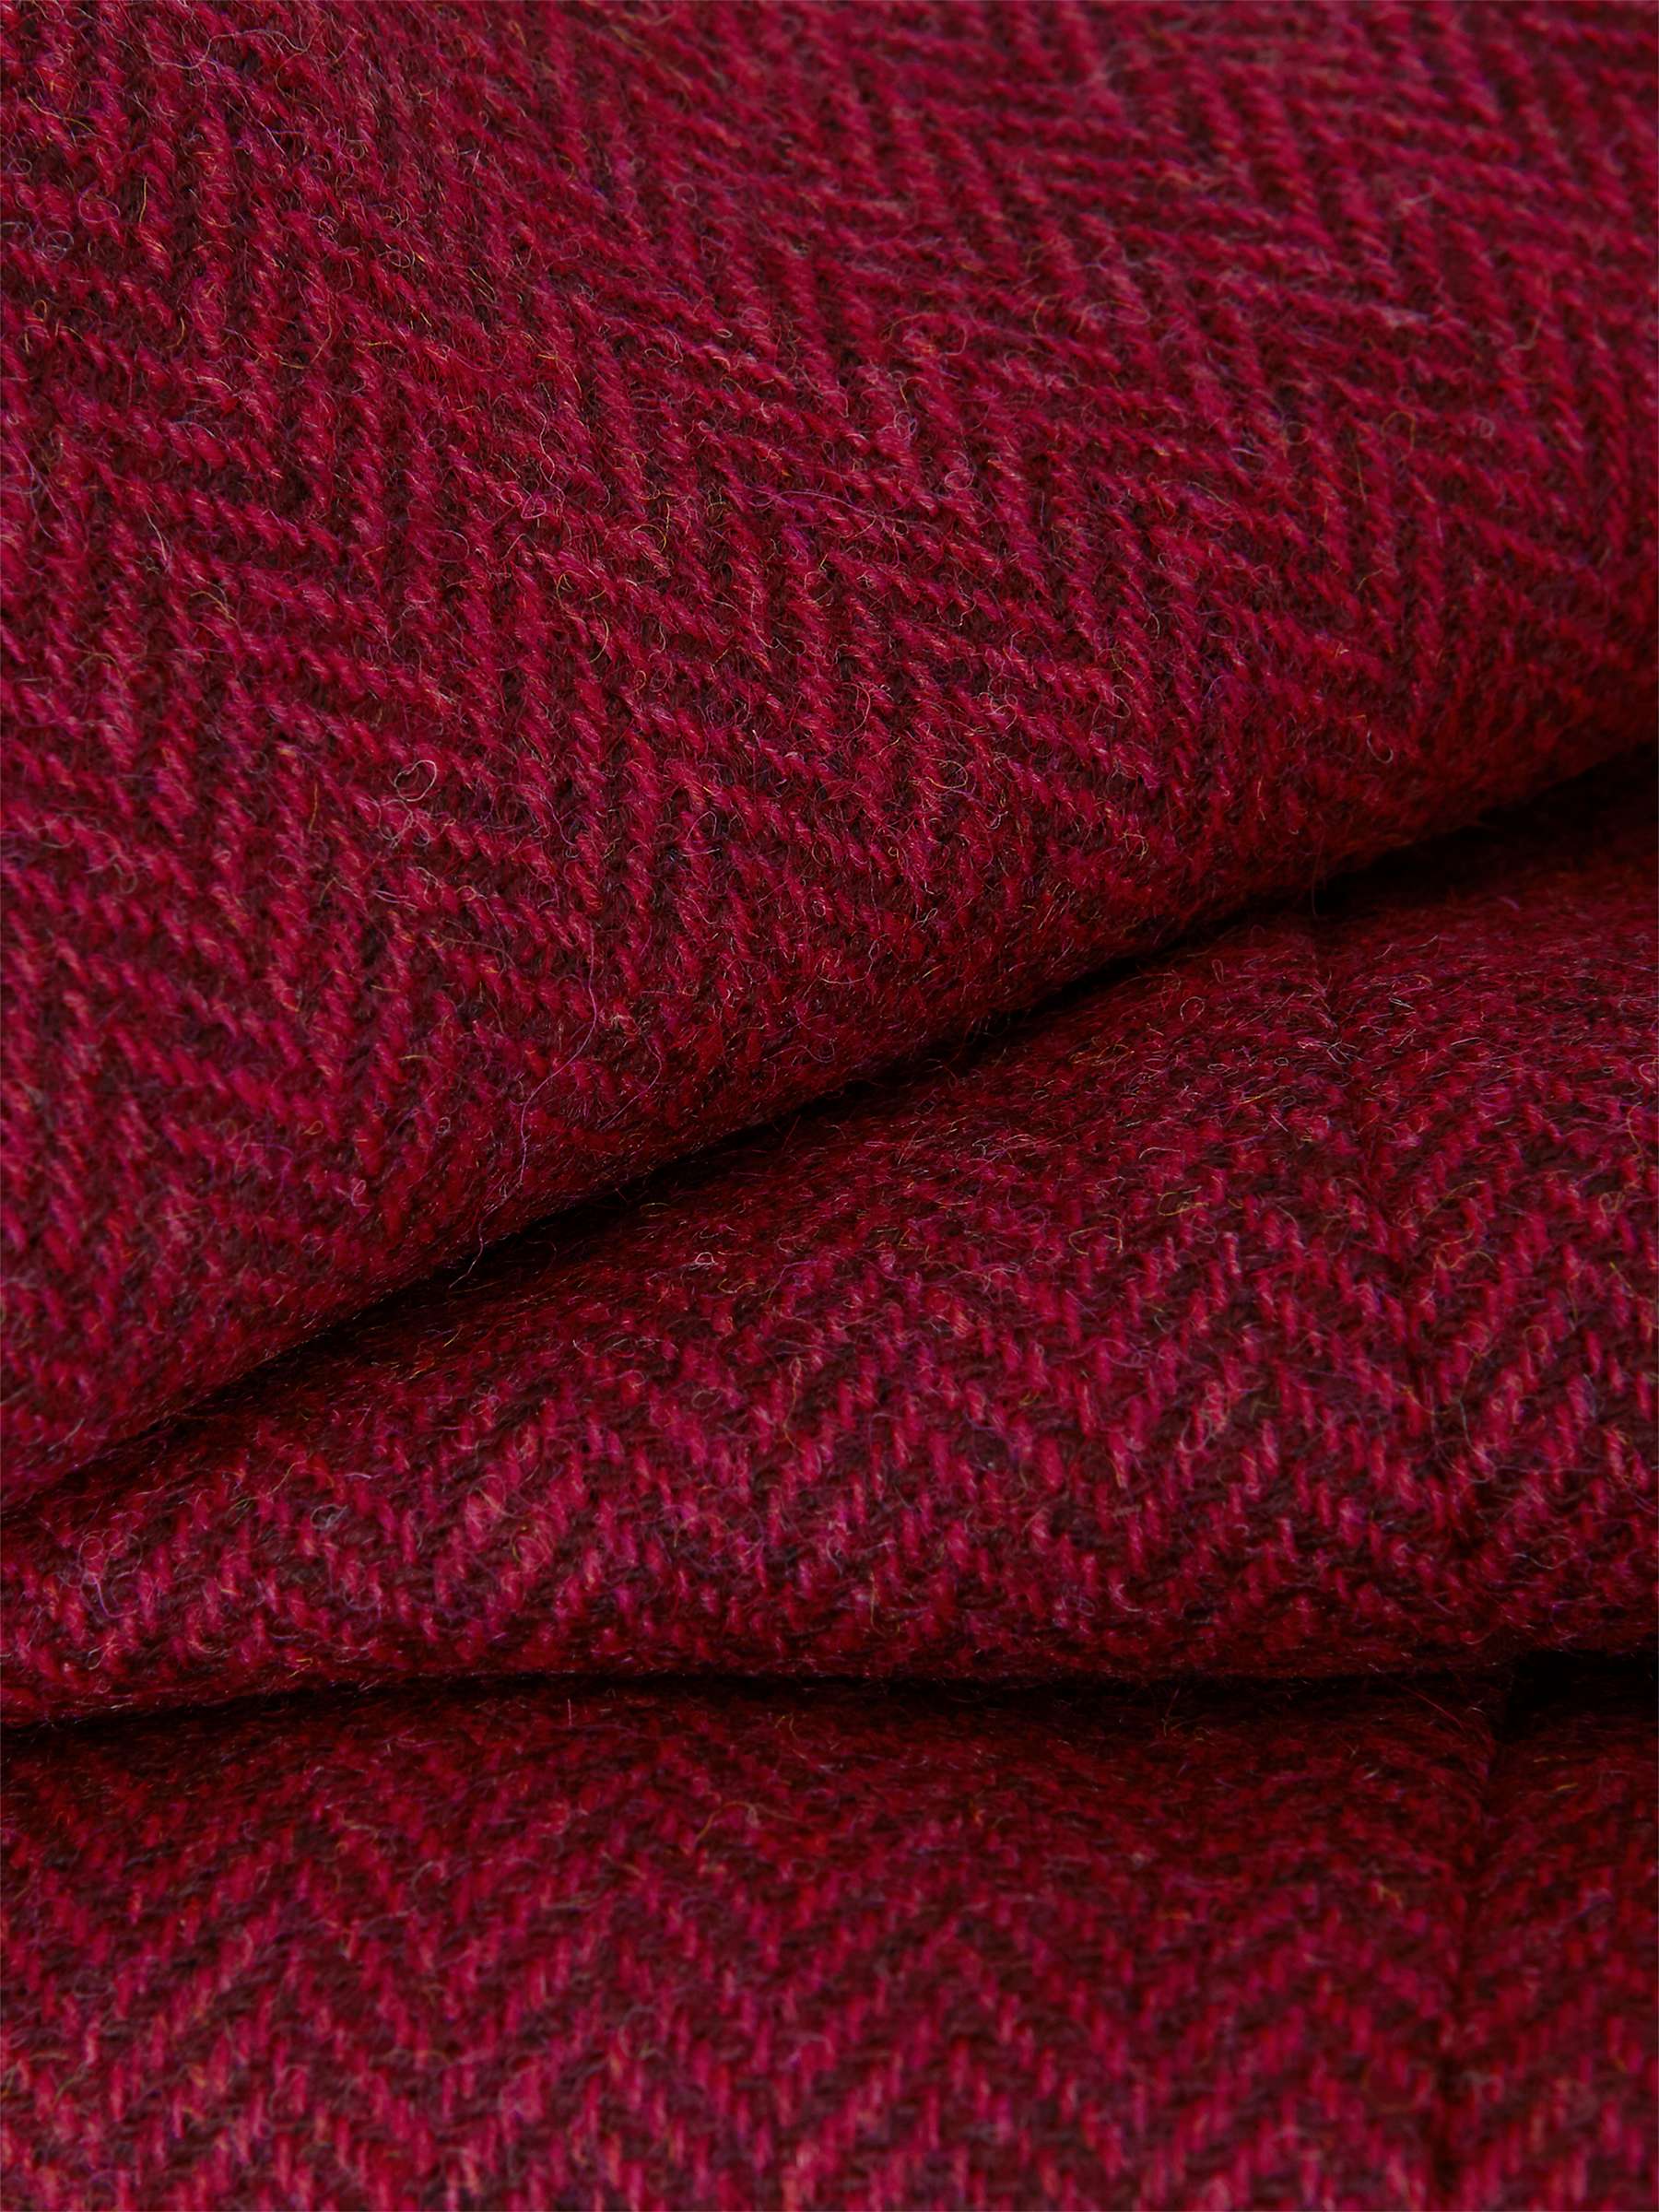 Buy Hobbs Petite Daniella Wool Pencil Skirt, Red Online at johnlewis.com